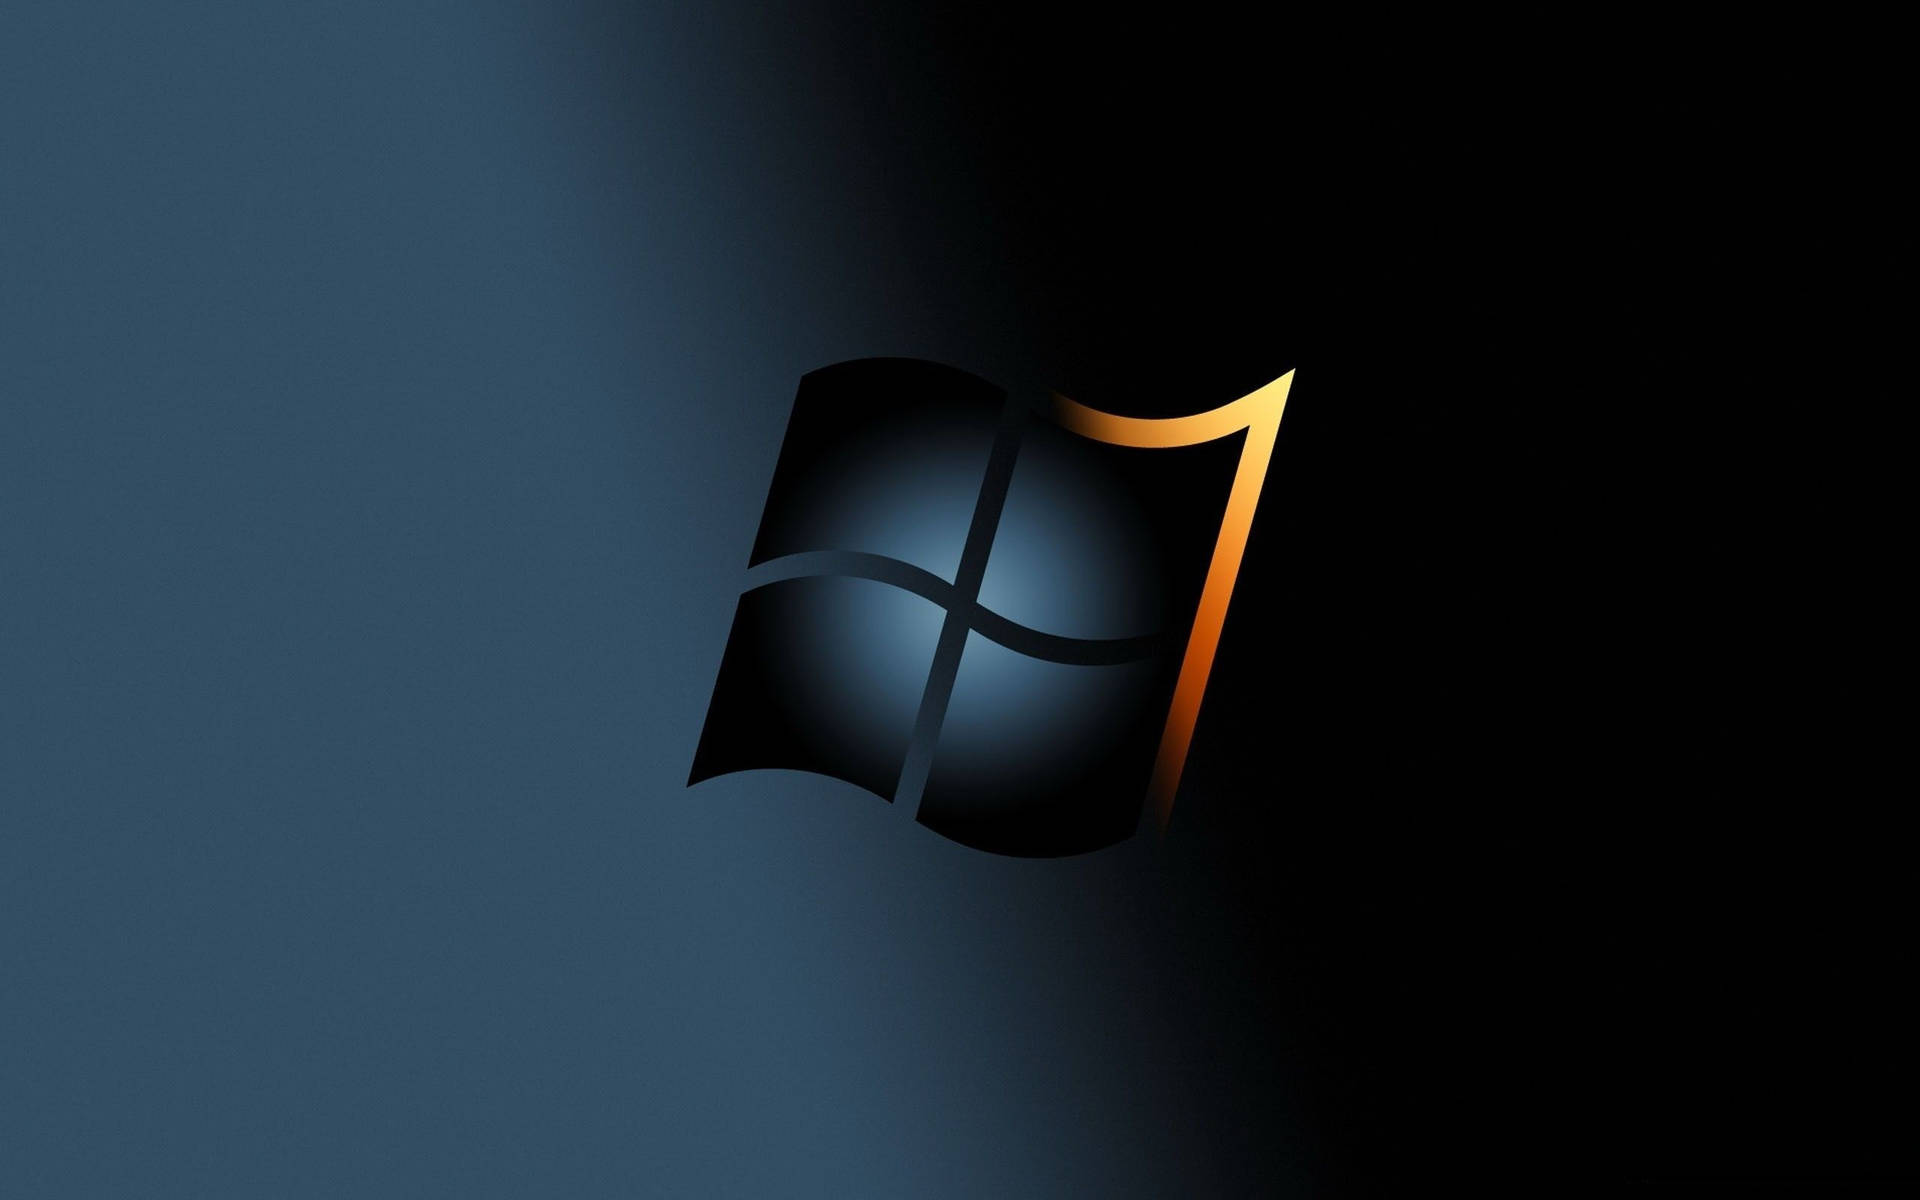 Black Windows 10 Hd Orange Tip Background